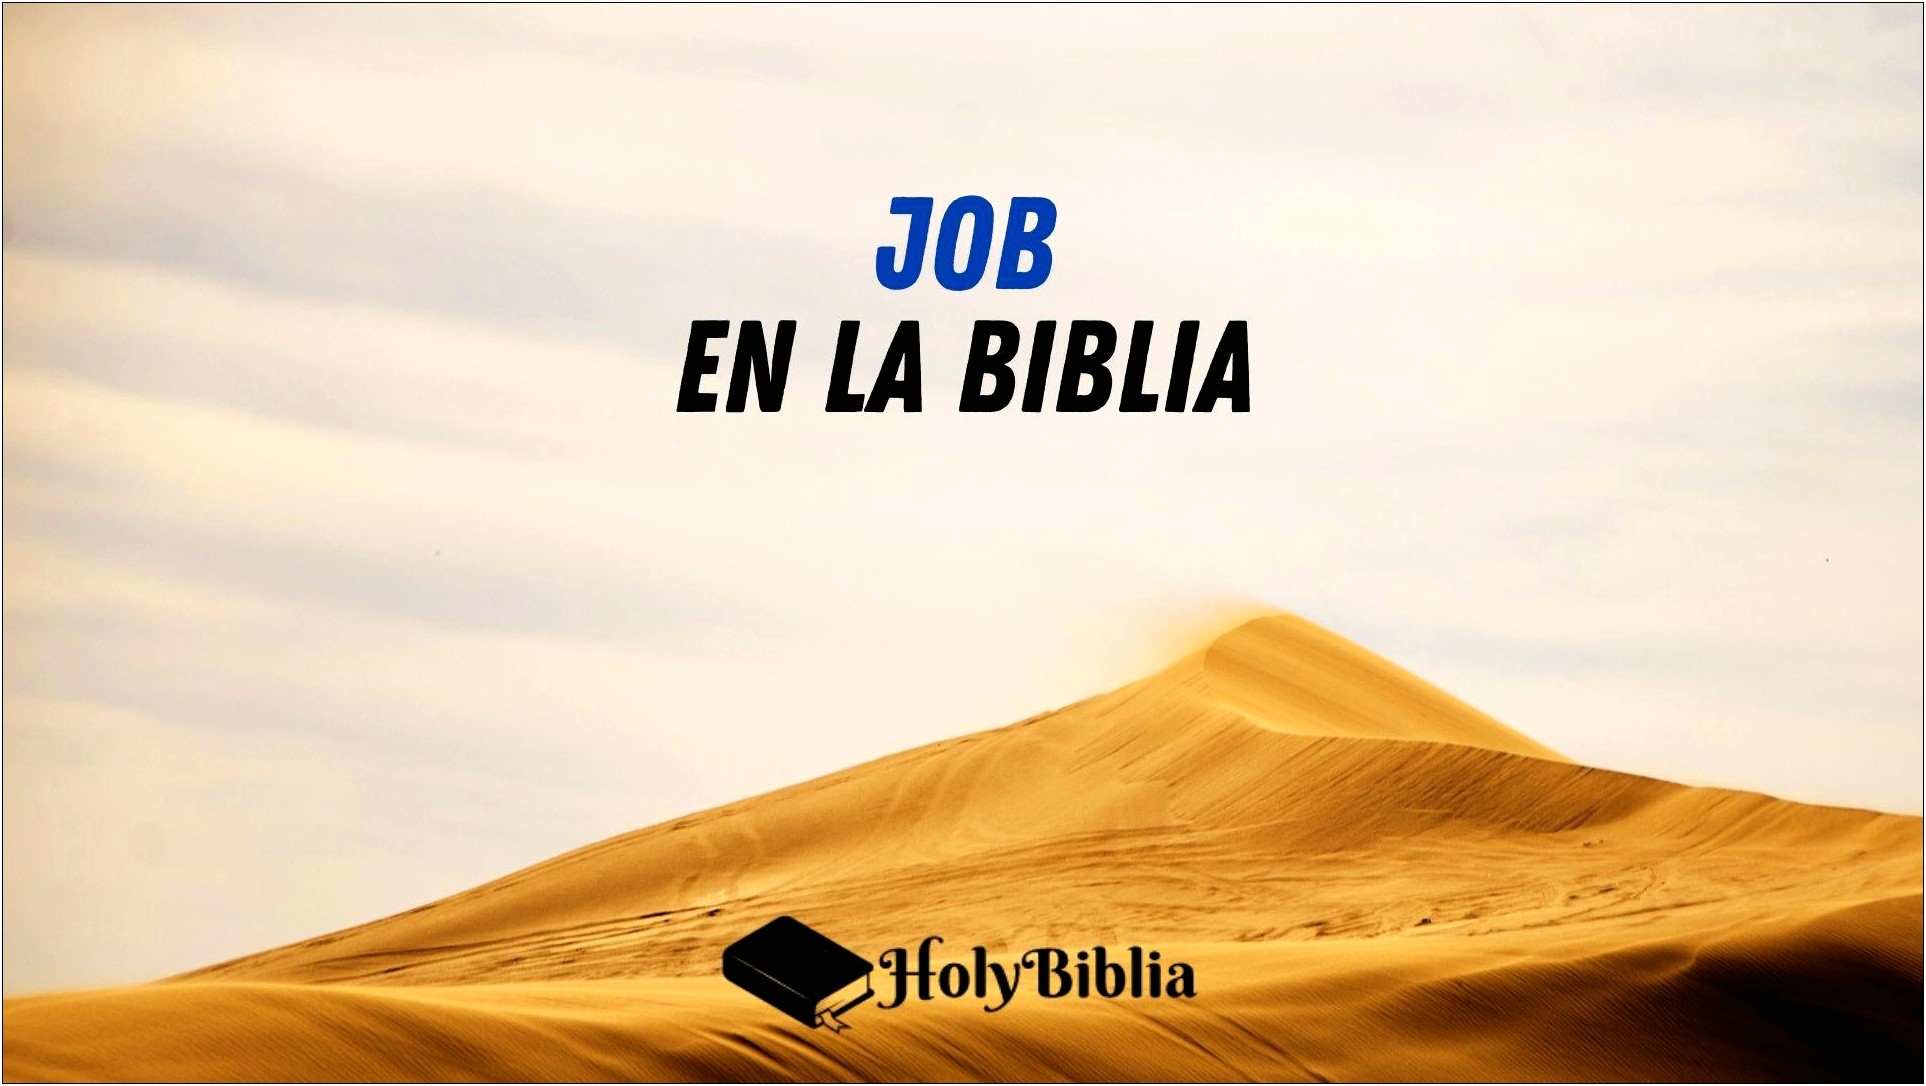 Historia Biblica De Job Resumida